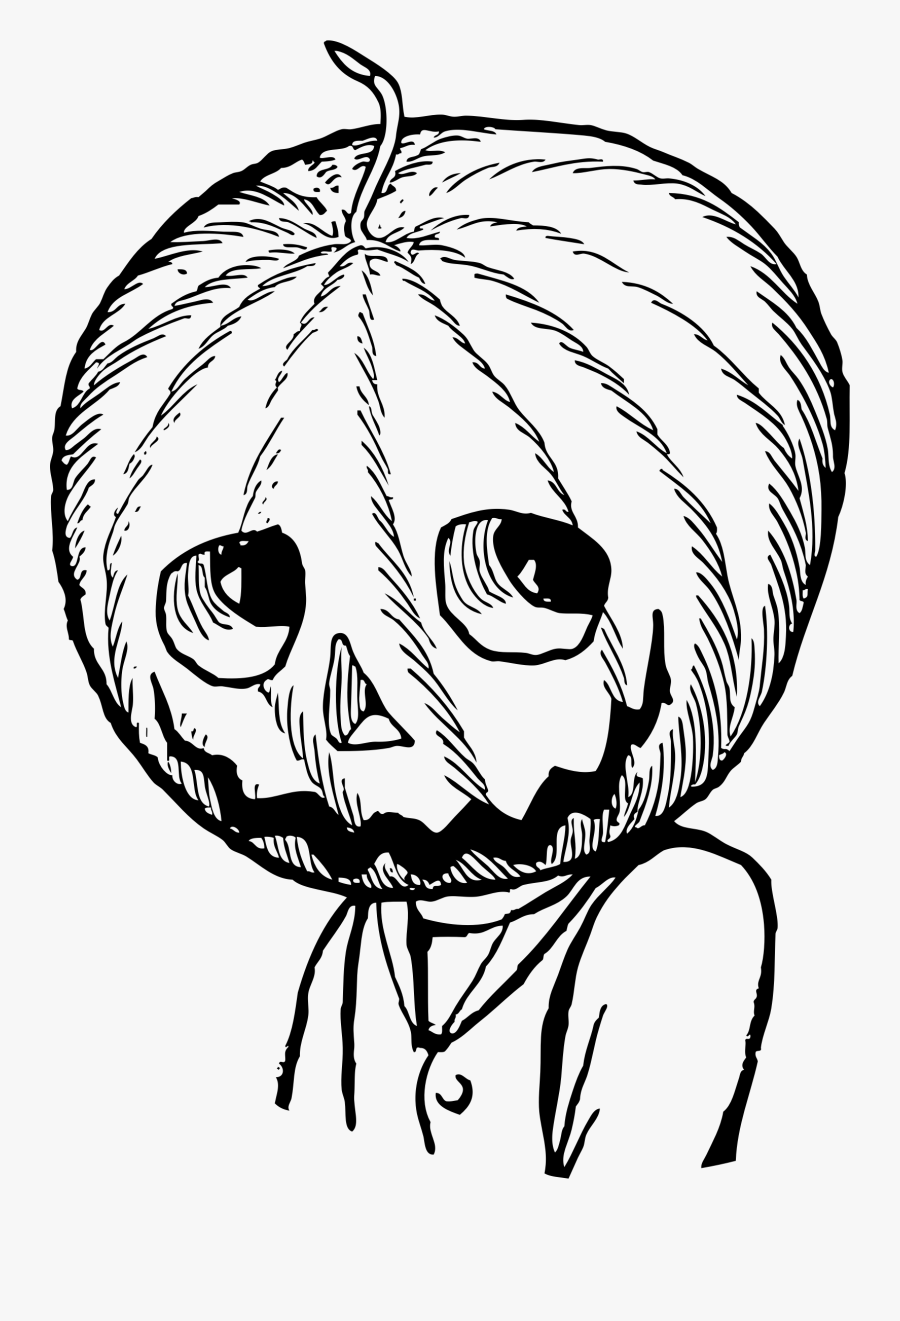 Minecraft Girl In Pumpkin Head - Pumpkin Head Character Anime, Transparent Clipart